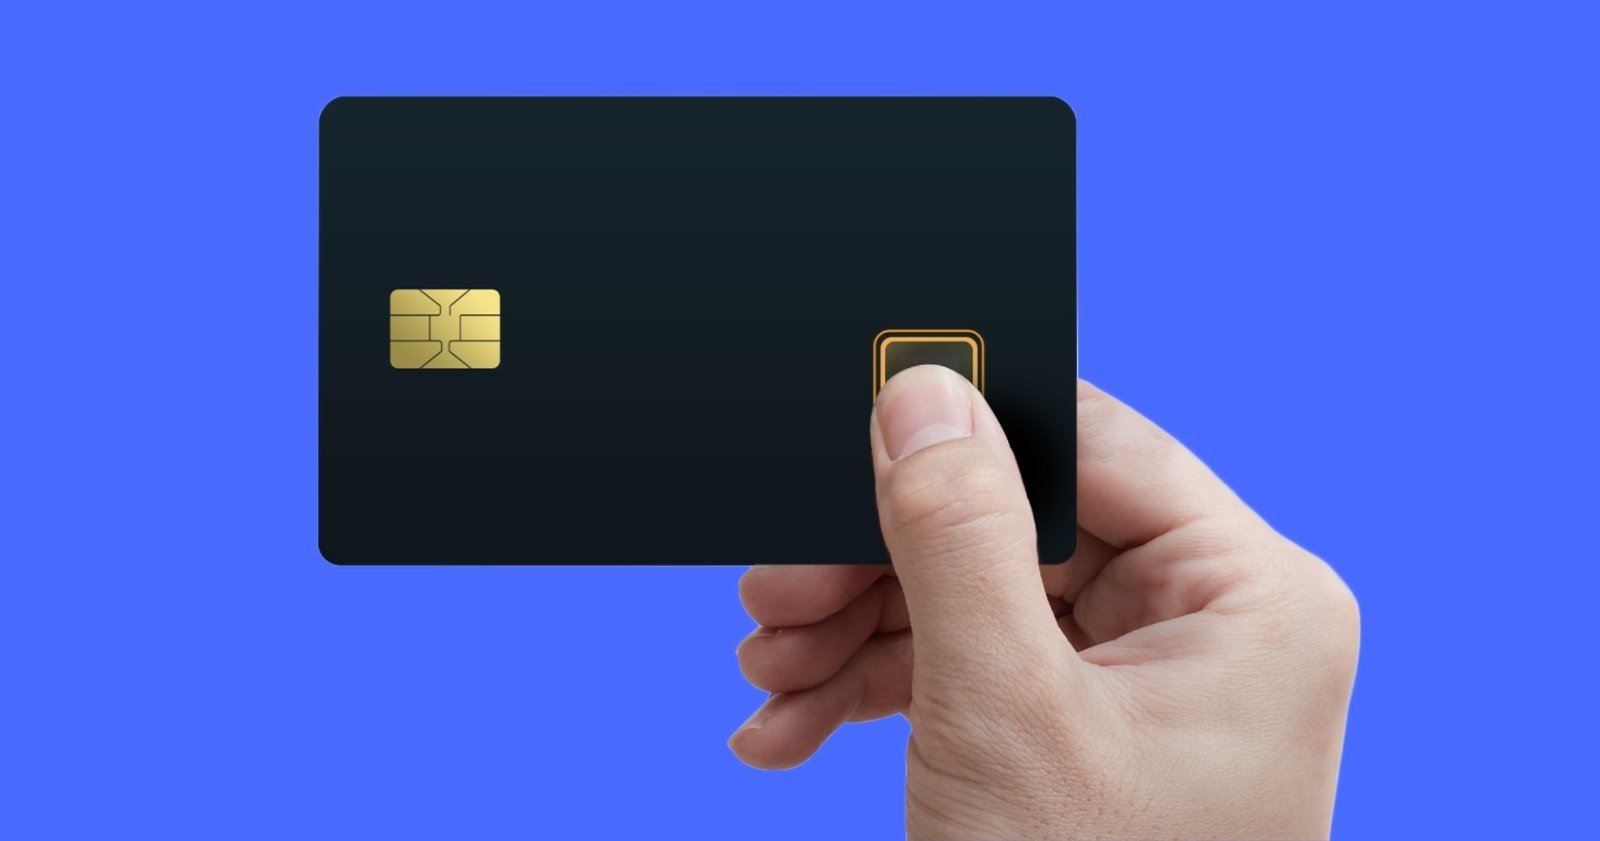 Tu próxima tarjeta de crédito podría incluir un lector de huellas gracias a Samsung